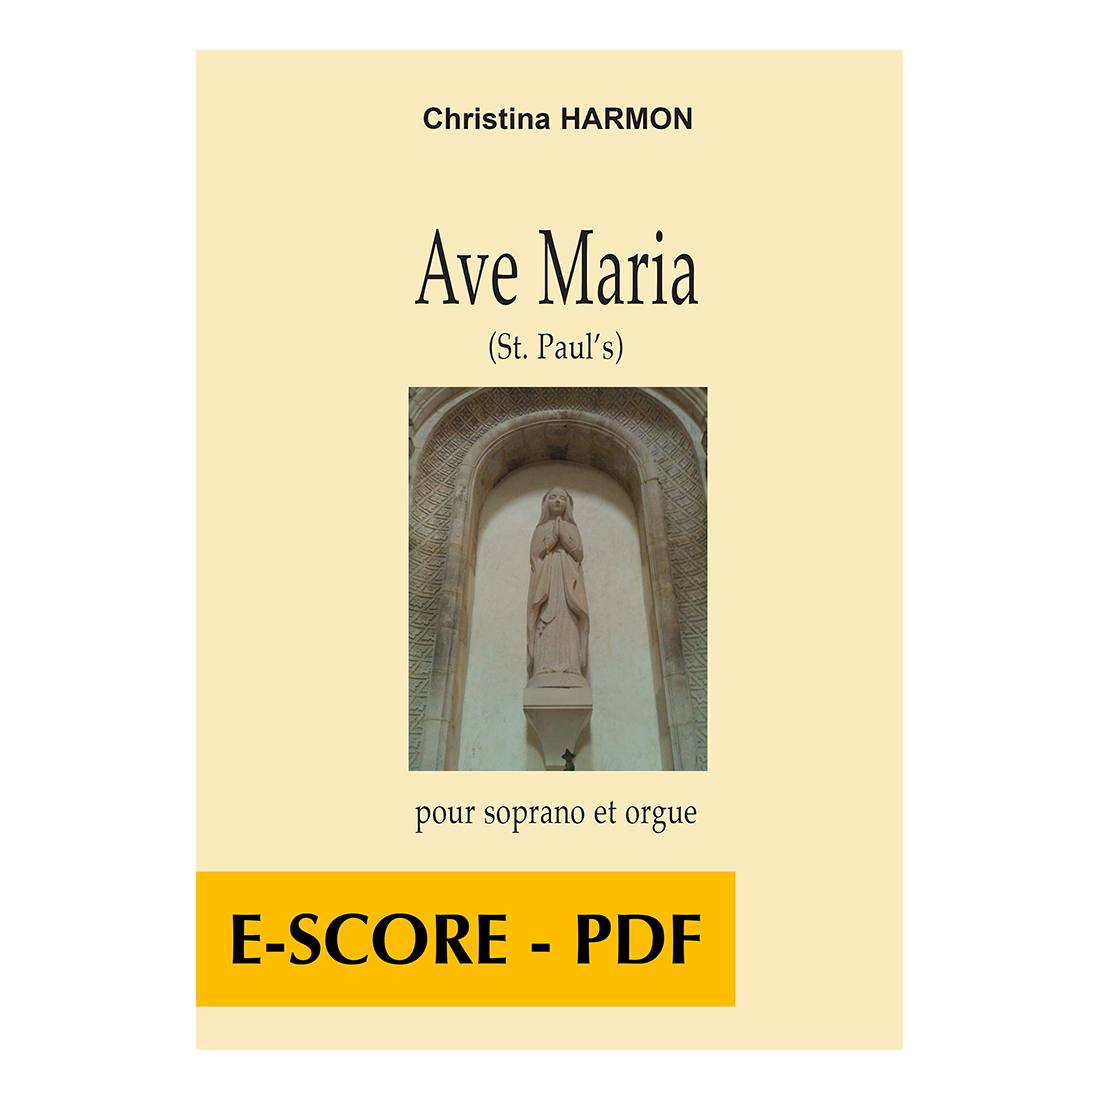 Avec Maria St Paul's pour soprano et orgue - E-score PDF